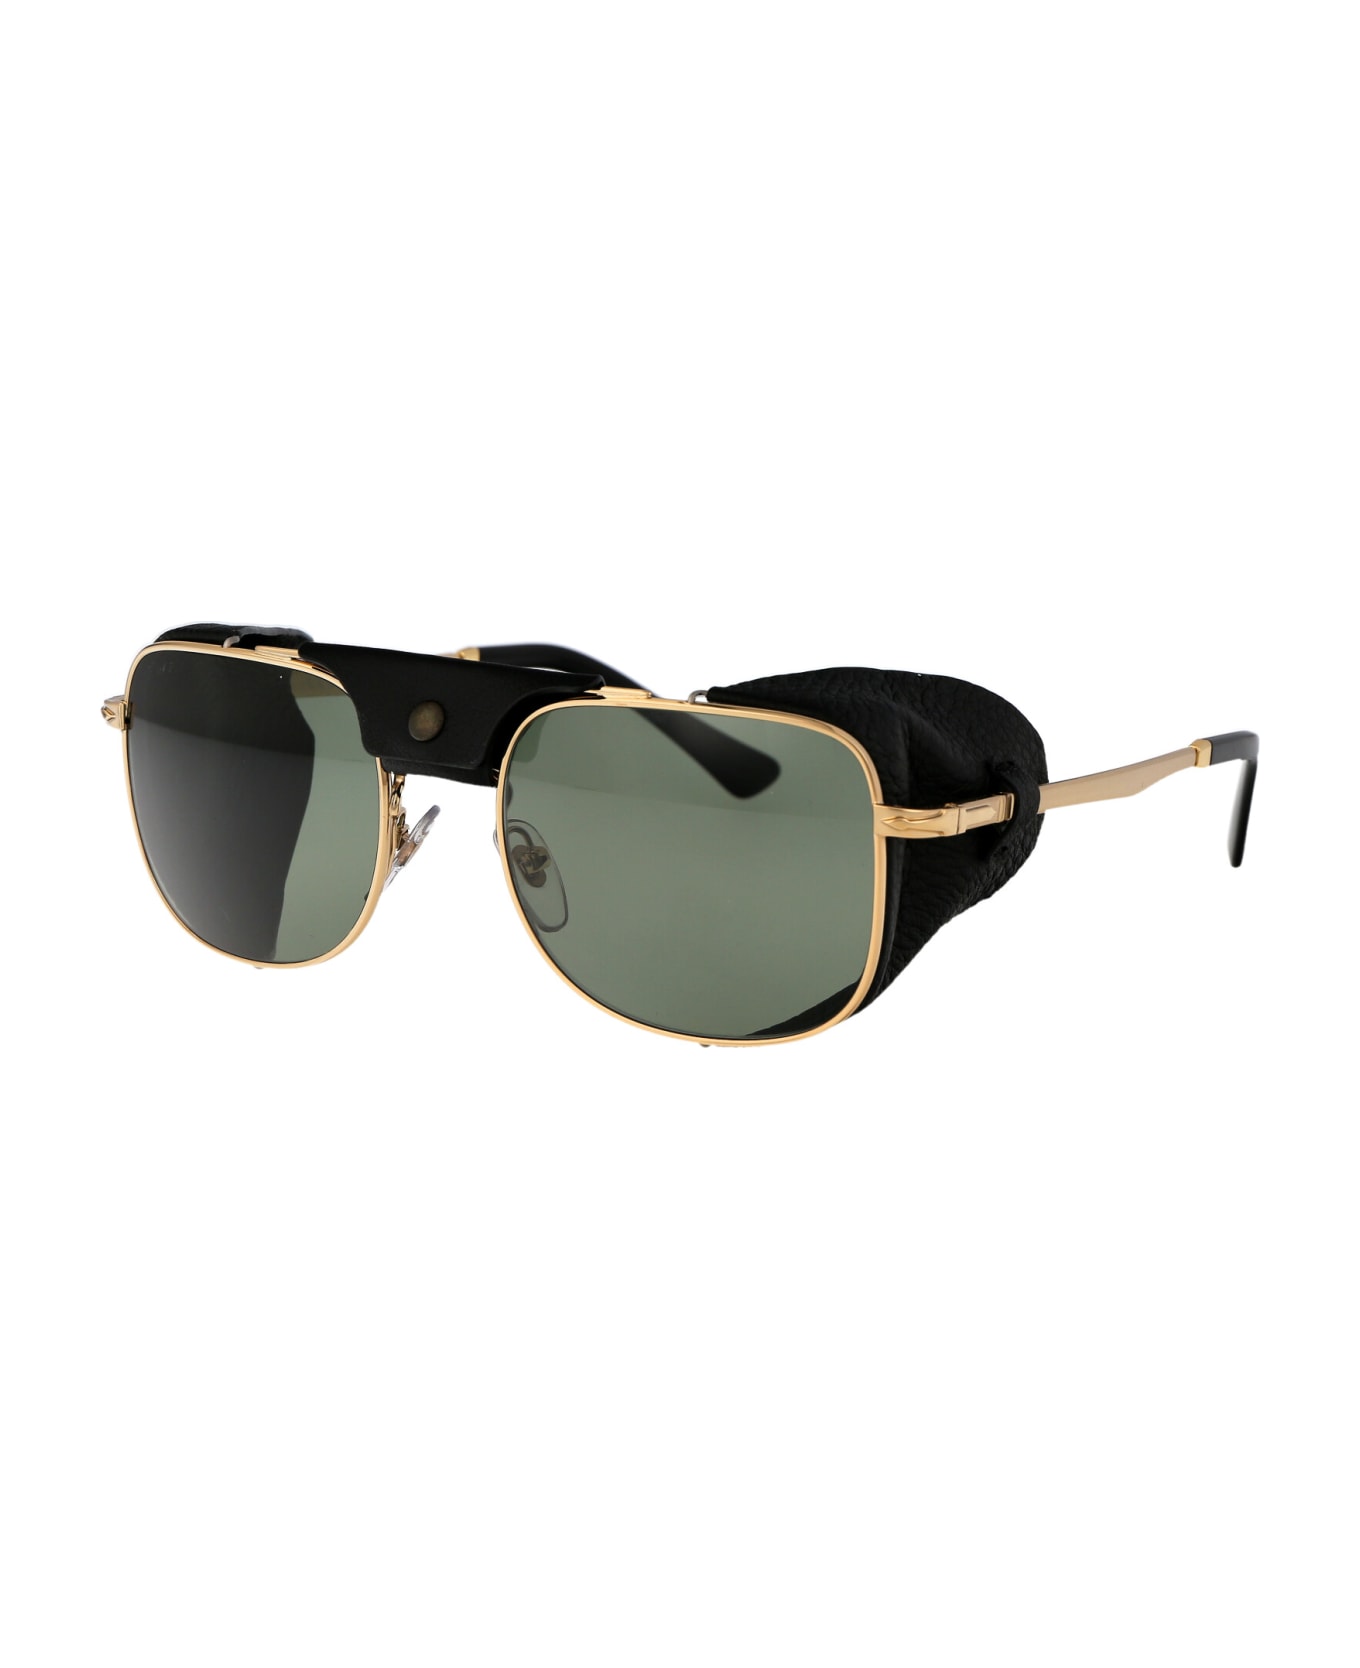 Persol 0po1013sz Sunglasses - 114958 Gold